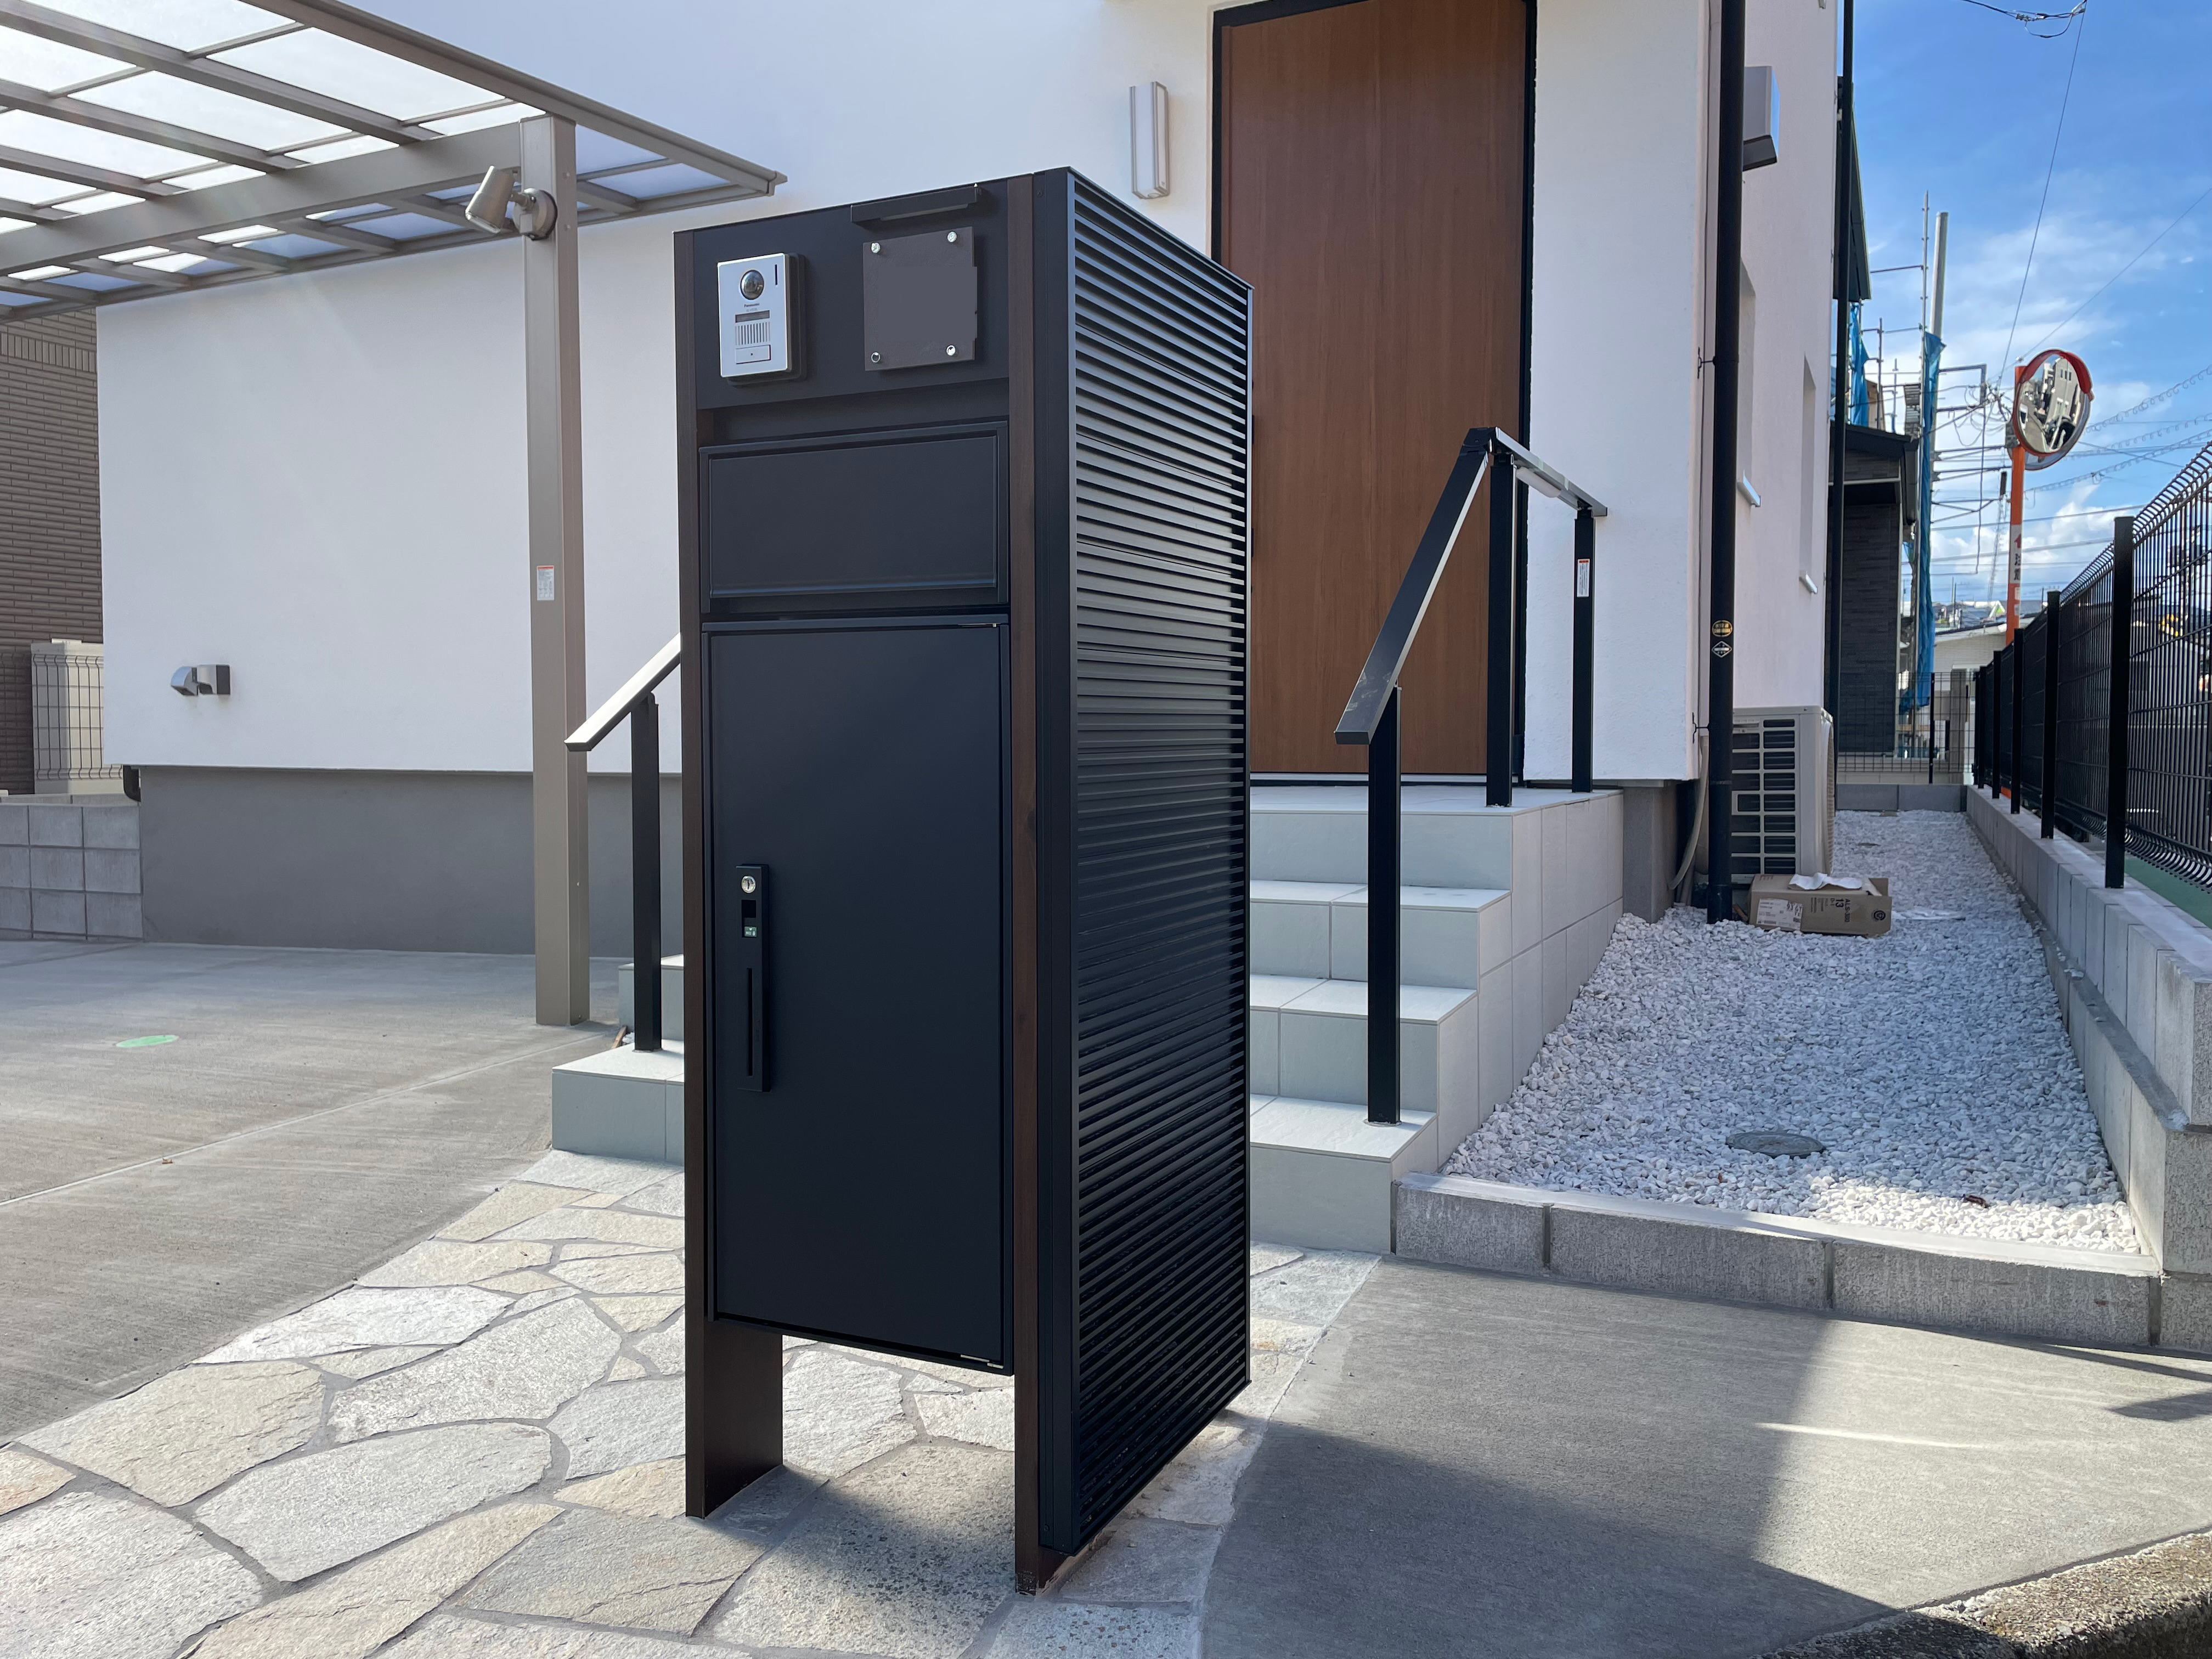 神奈川県綾瀬市Dさん施工現場の門扉アフター画像2/最新機能門柱には宅配BOXがついています